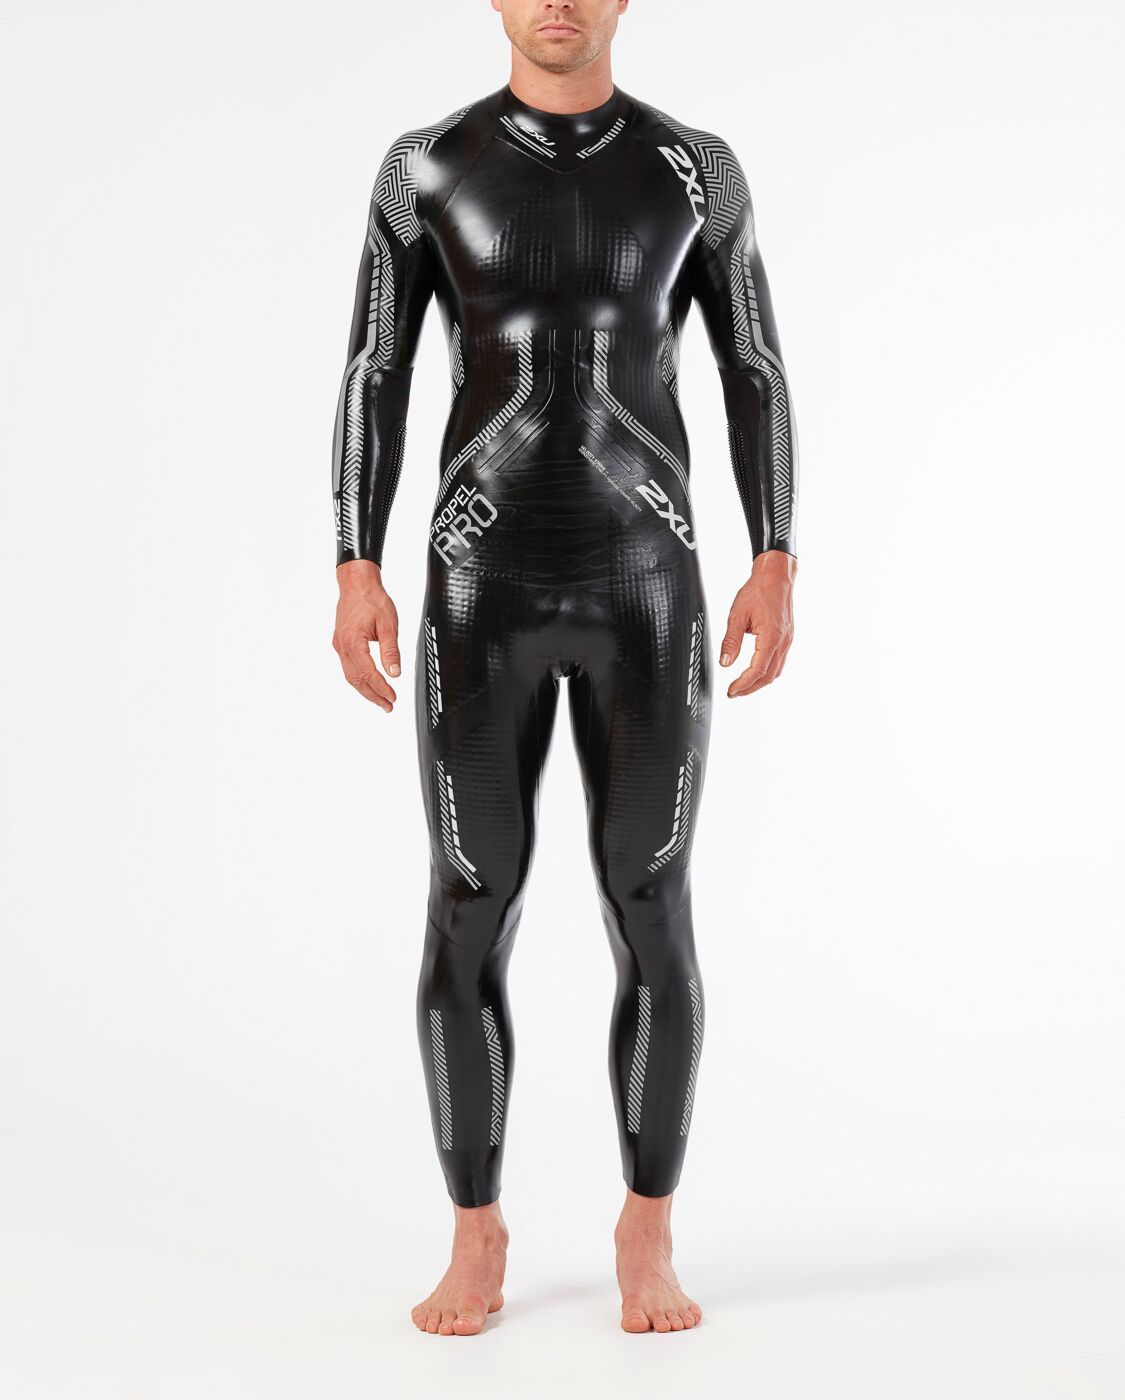 2XU South Africa - Men's Propel:Pro Wetsuit - Black/Silver